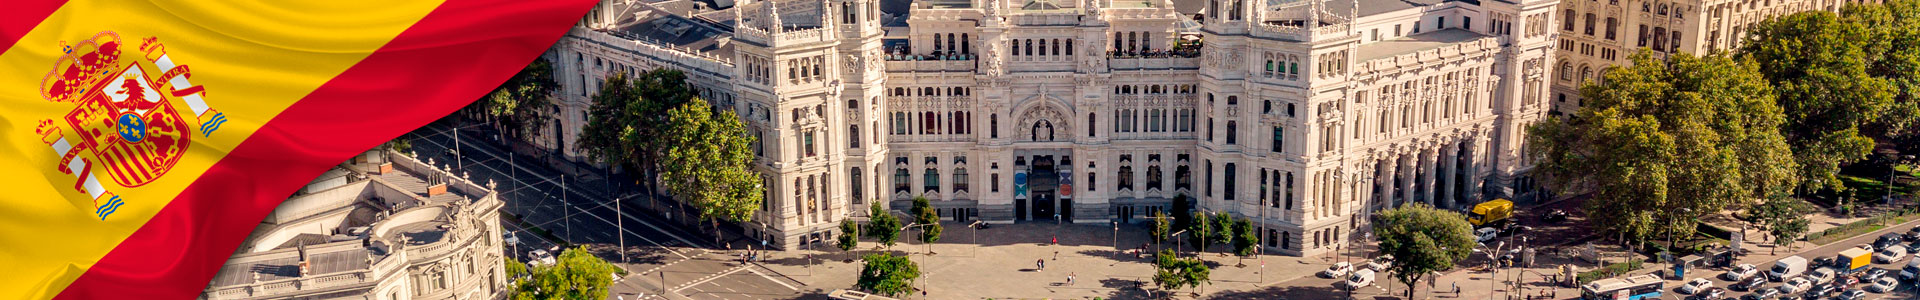 Bandera de España con ayuntamiento de Madrid y Plaza de Cibeles